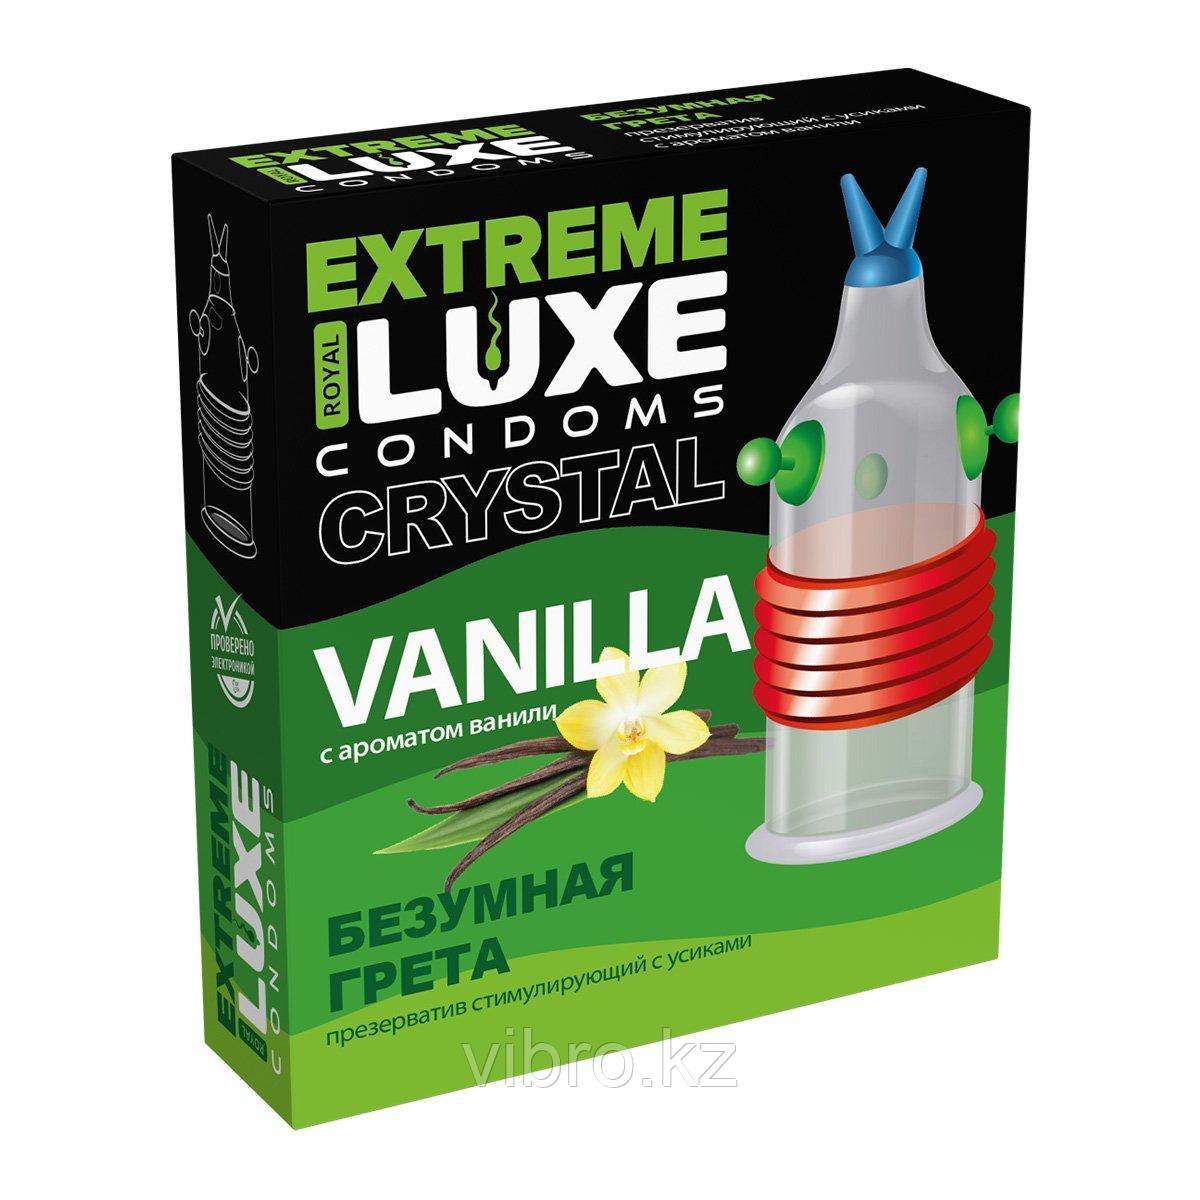 Презерватив Luxe EXTREME "Безумная грета", с ароматом ванили 1шт